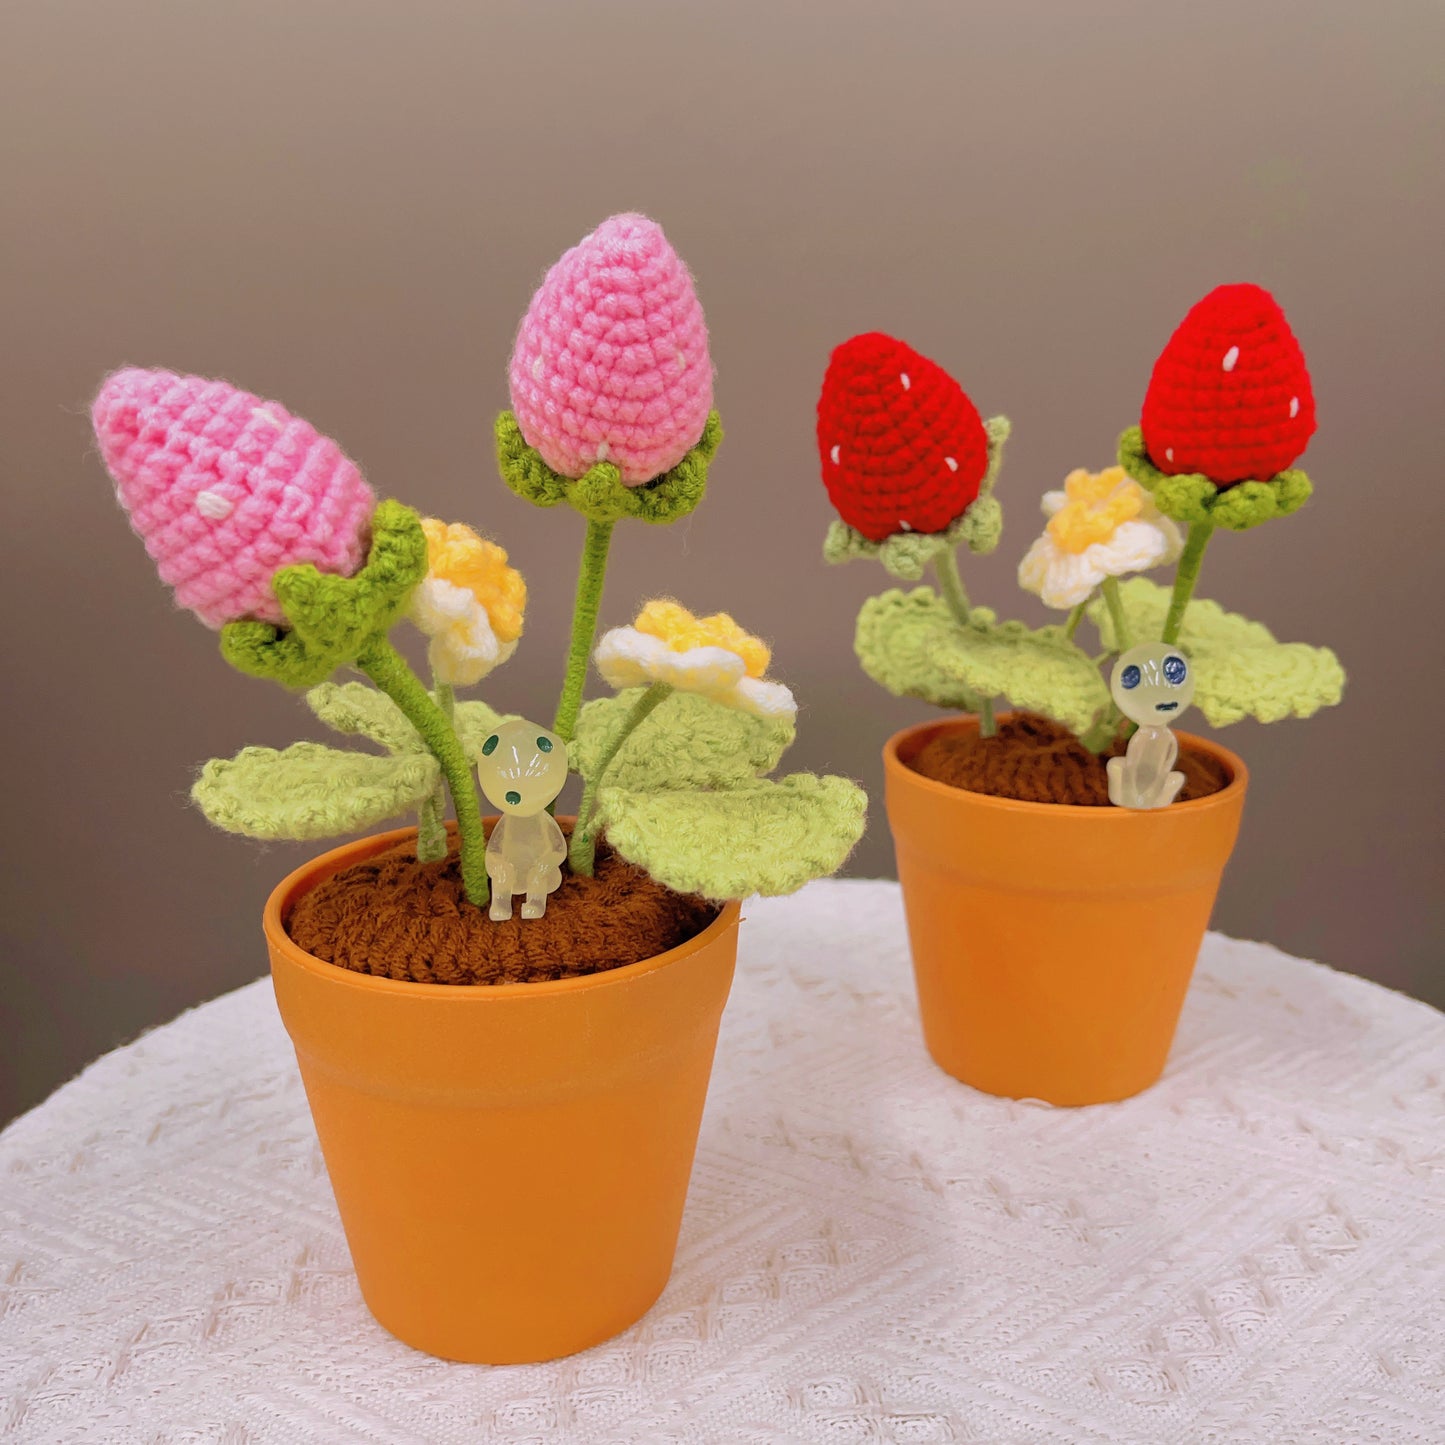 Handgefertigte Erdbeer-Häkeltopfpflanze – süße Heimdekoration – perfektes Geschenk für Pflanzenliebhaber – realistische Kunstpflanze mit sanftem Glanz – handgefertigt